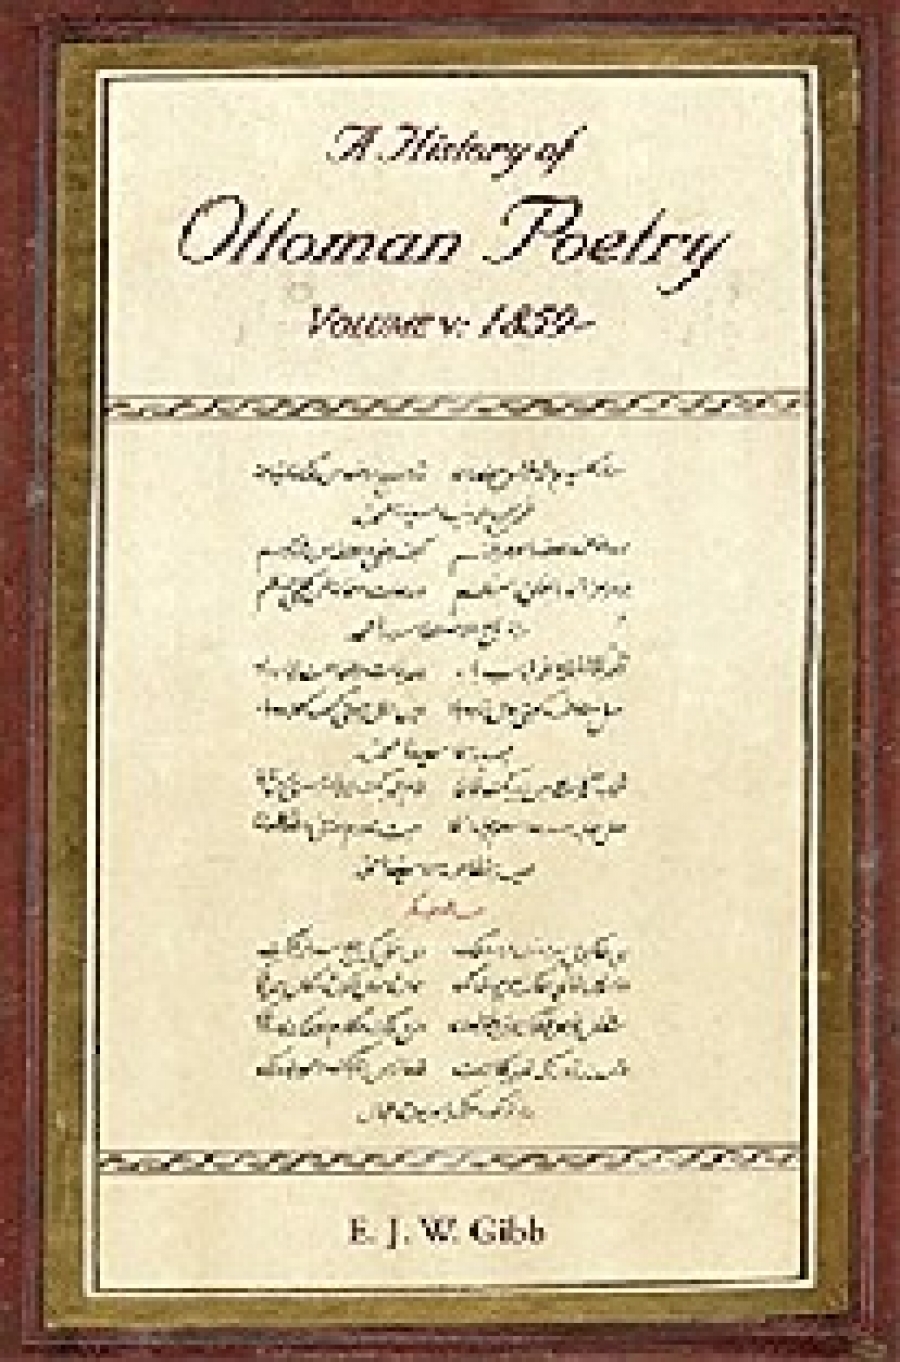 E. J. W. Gibb A History of Ottoman Poetry Volume V: 1859- 